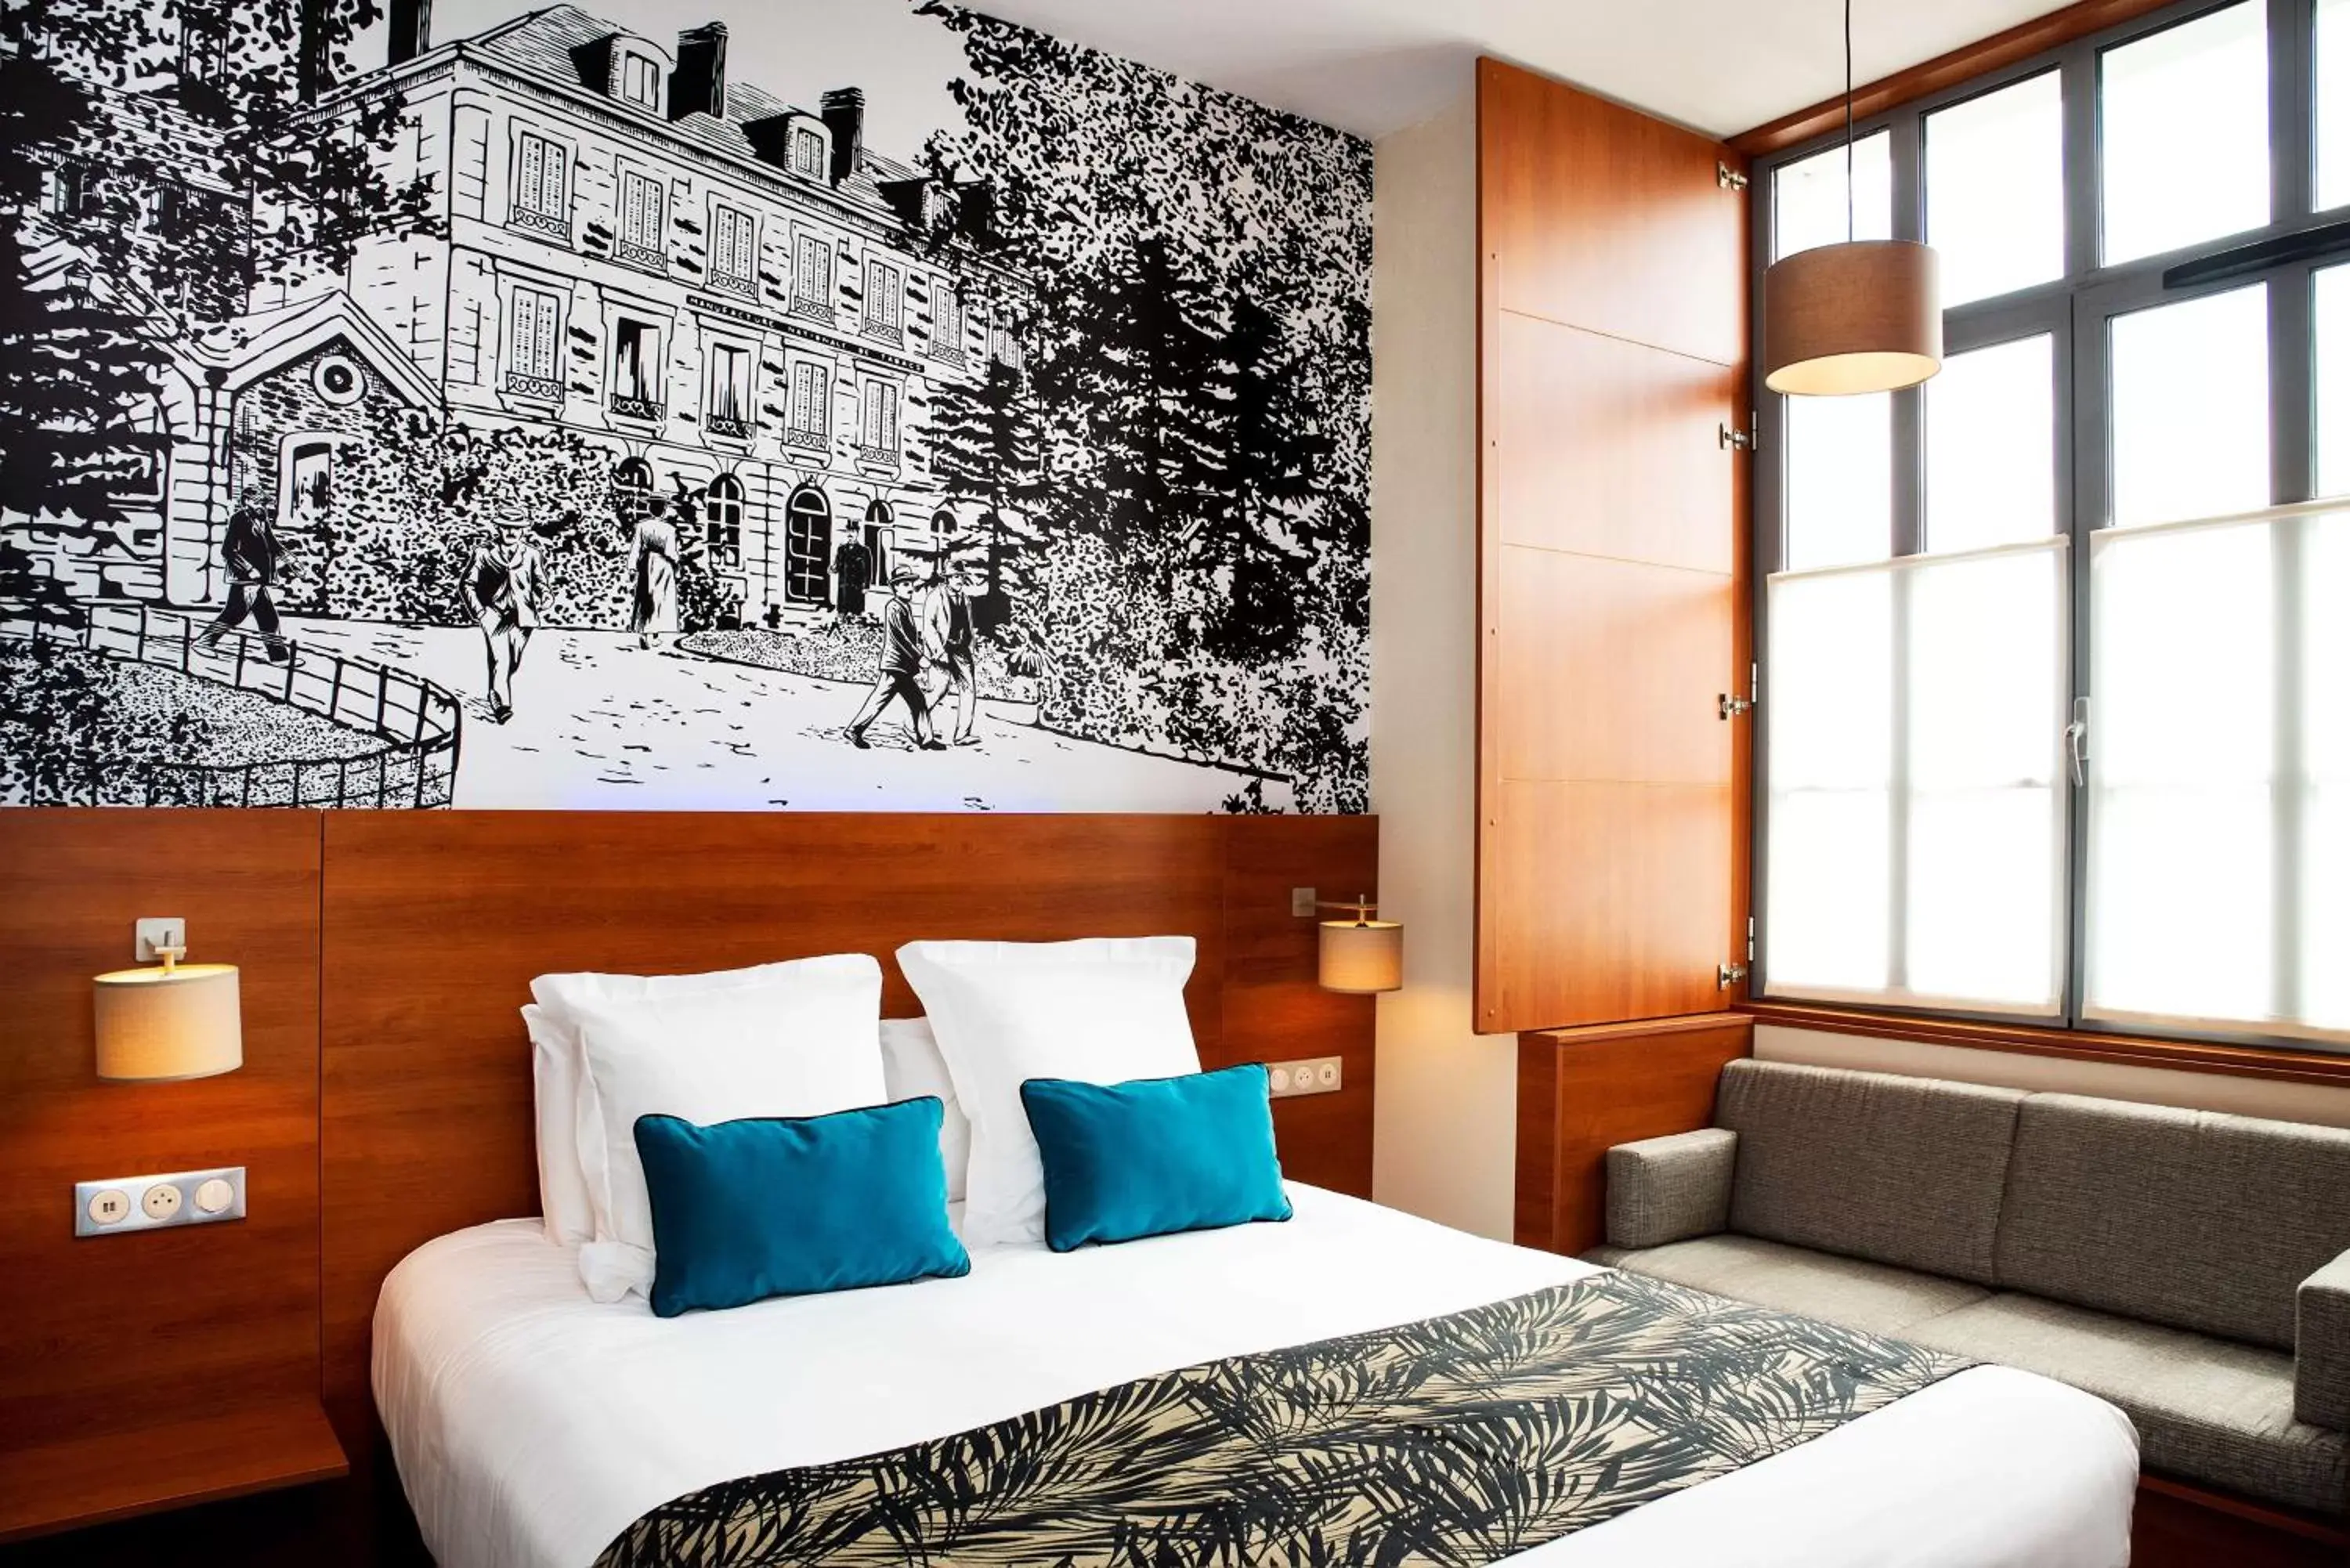 Decorative detail, Bed in Best Western Plus Hôtel Colbert